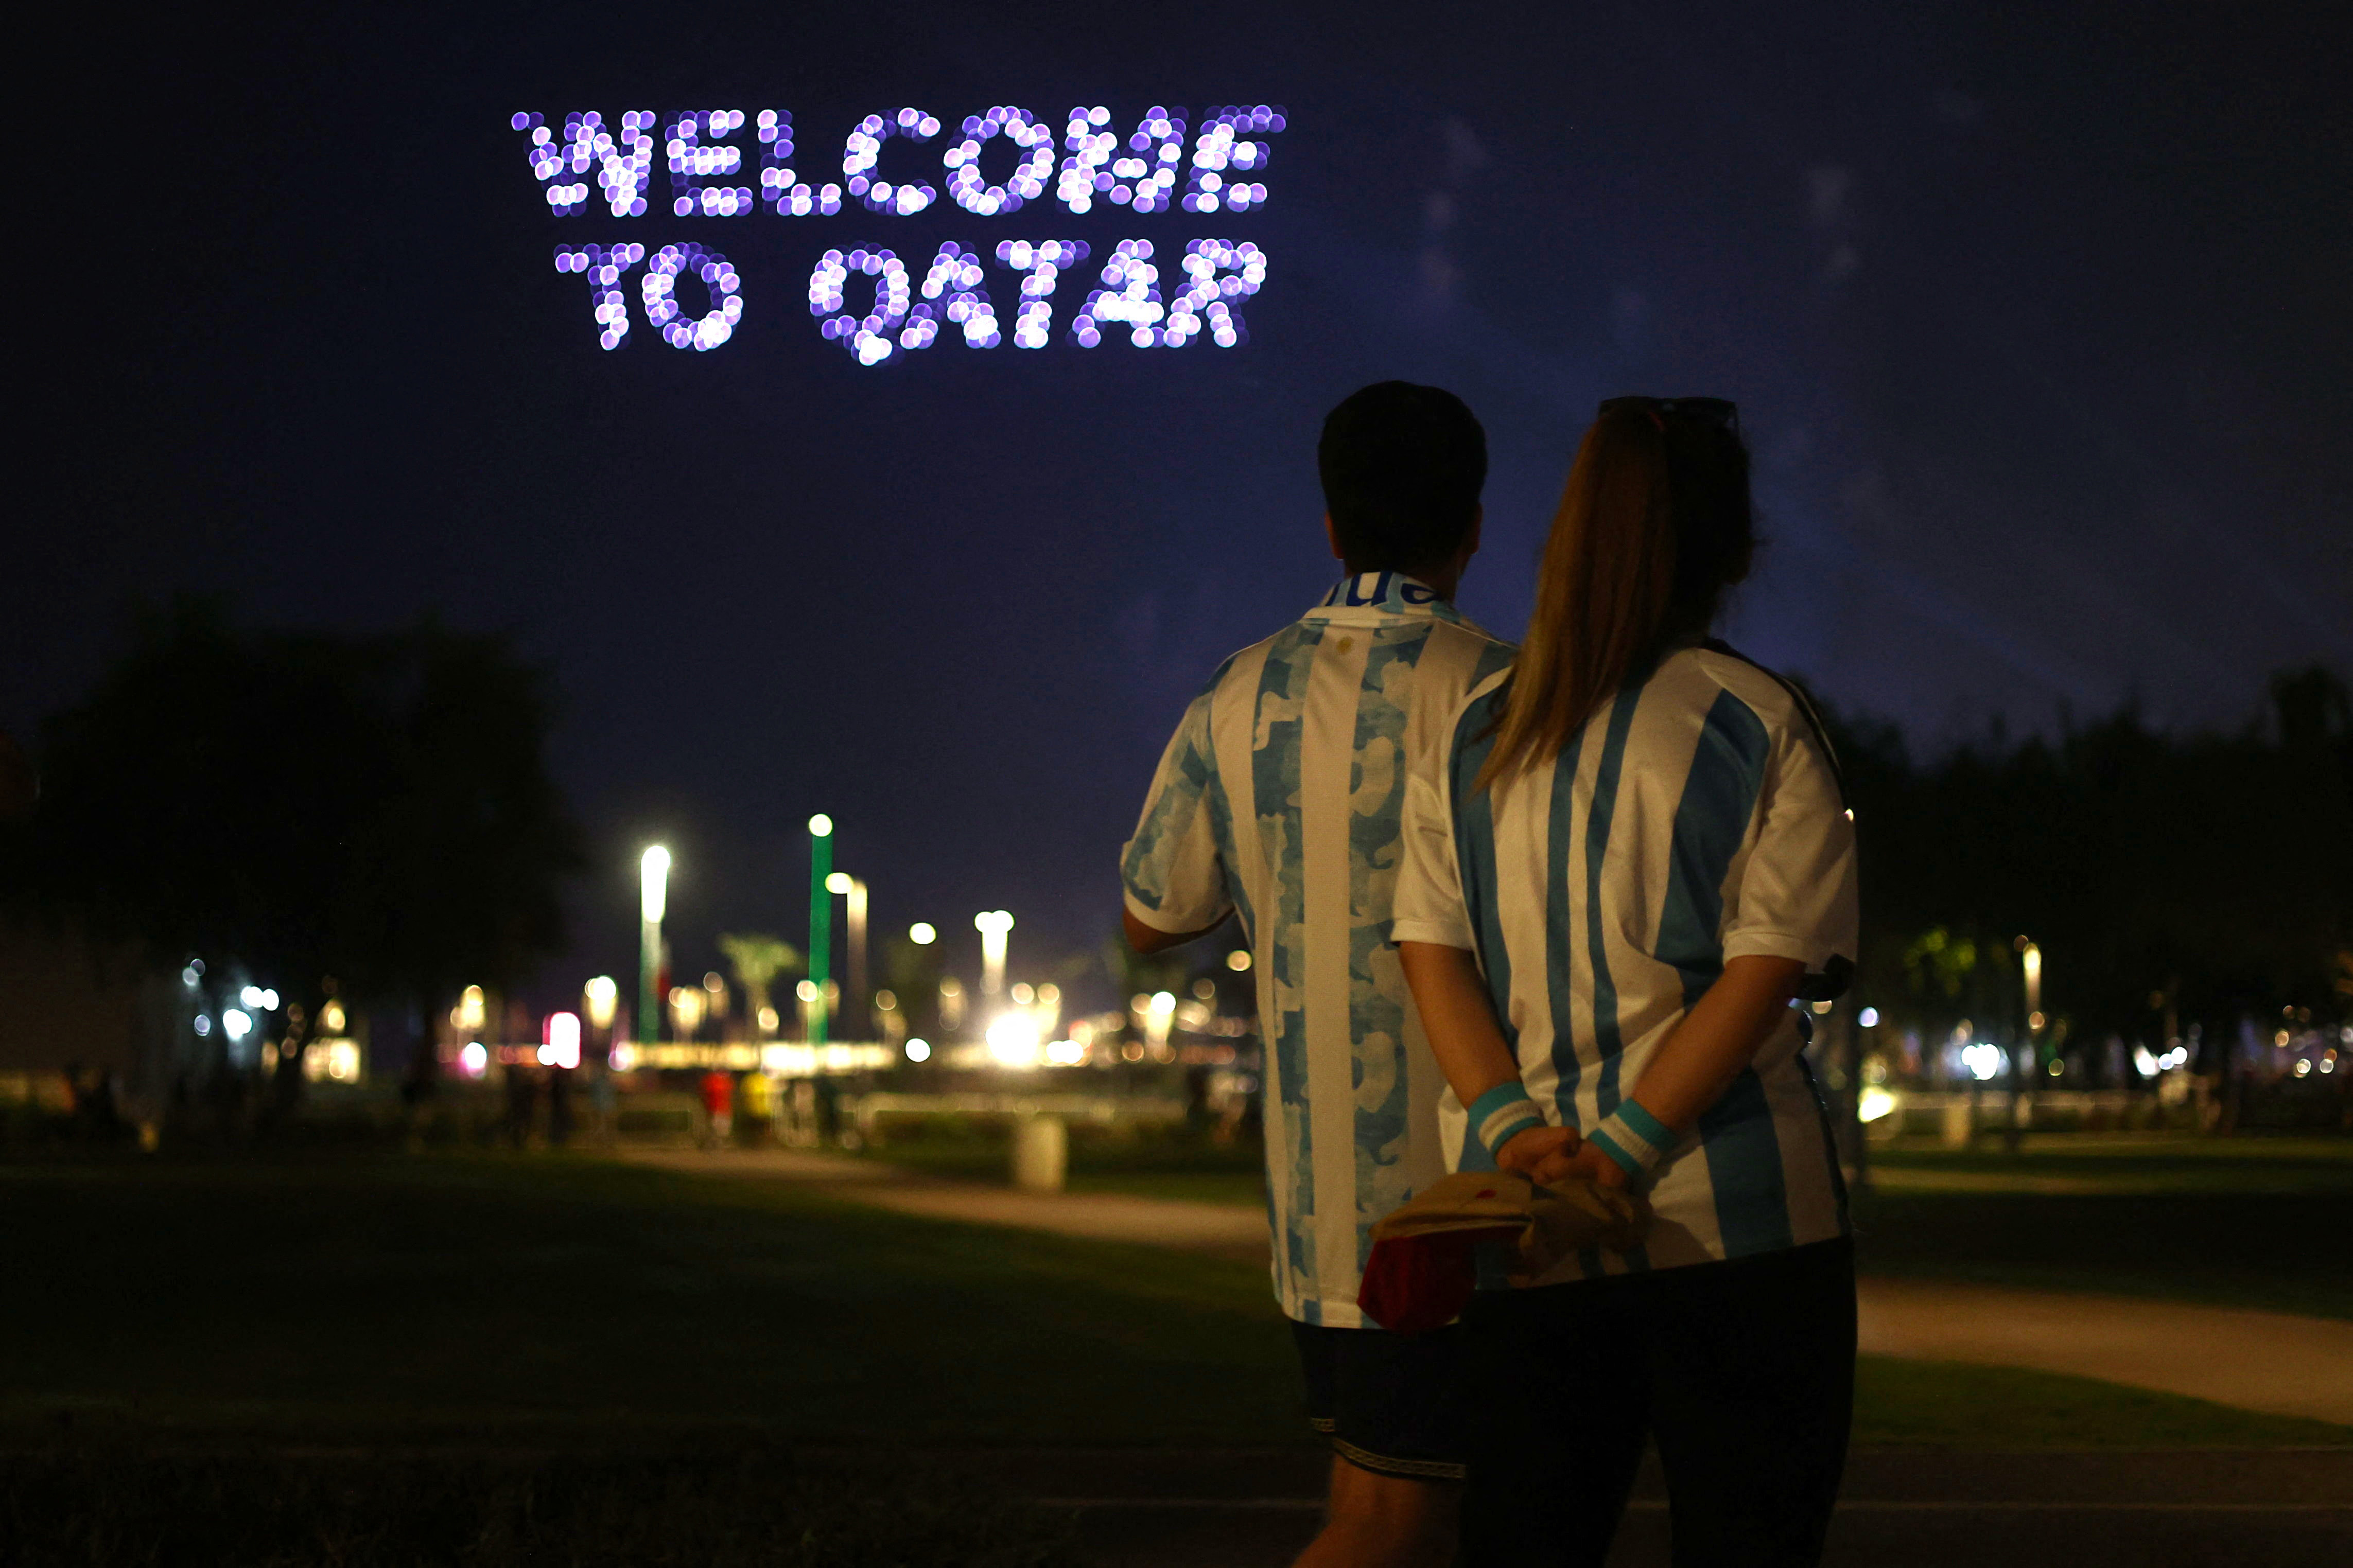 Los argentinos que viajen a Qatar podrán aprovechar las millas que obtengan para ahorrar o pagarse nuevos vuelos. (REUTERS/Fabrizio Bensch)